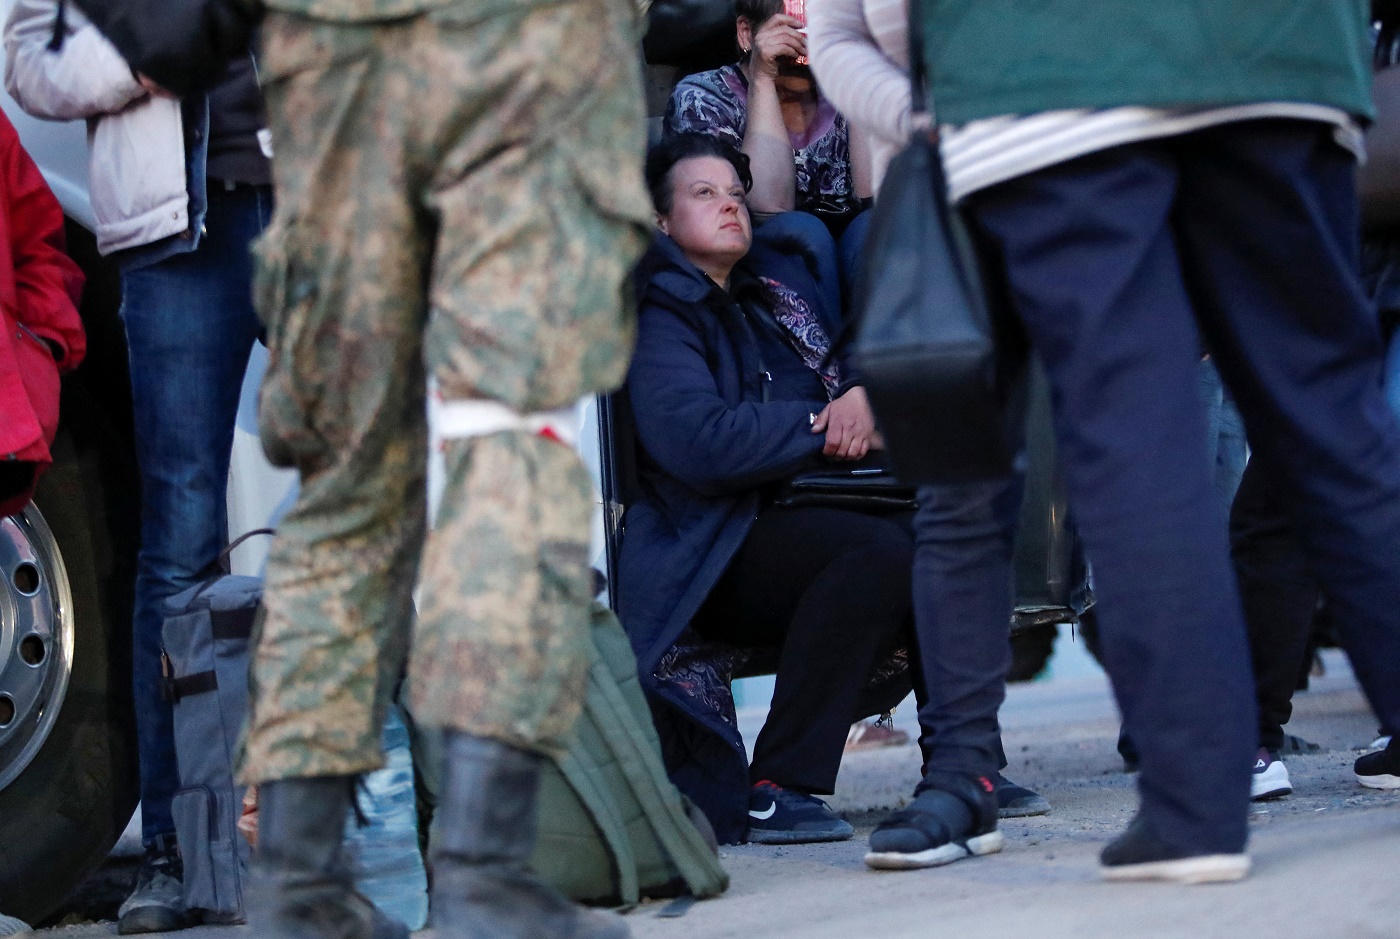 Ukraine evacuates all women, children from Mariupol steel plant under siege